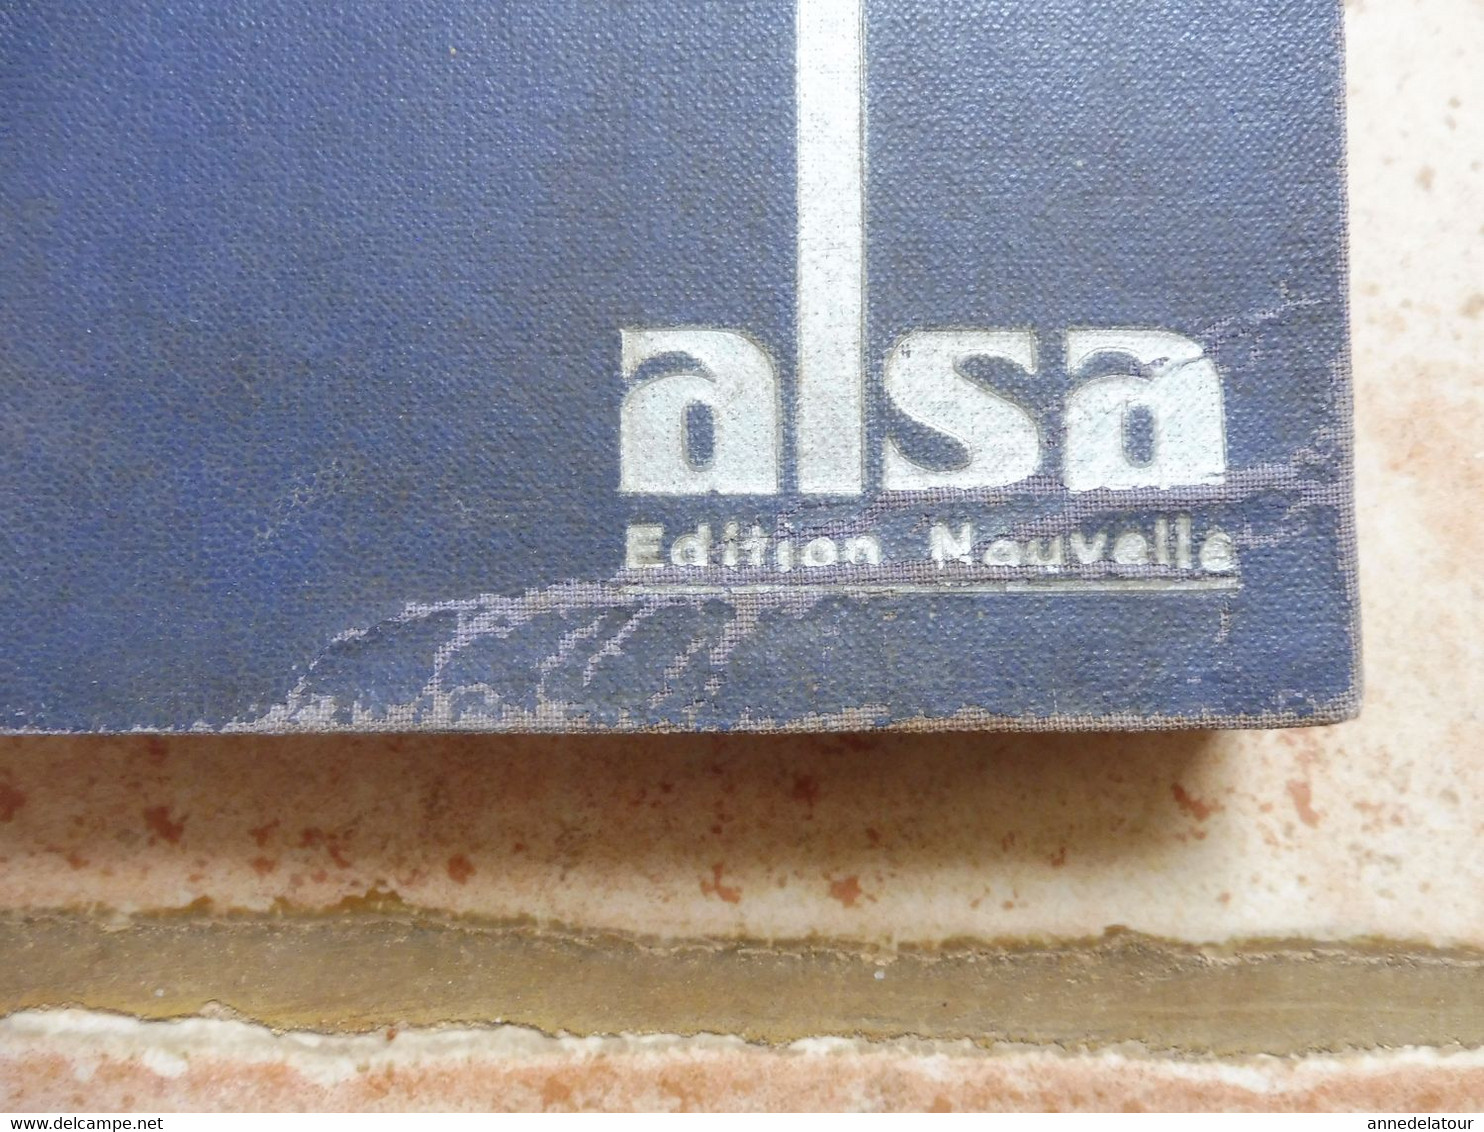 1947 Les bonnes recettes ALSA ,  158 pages , dont 16 pages publicitaires (couverture toilée)